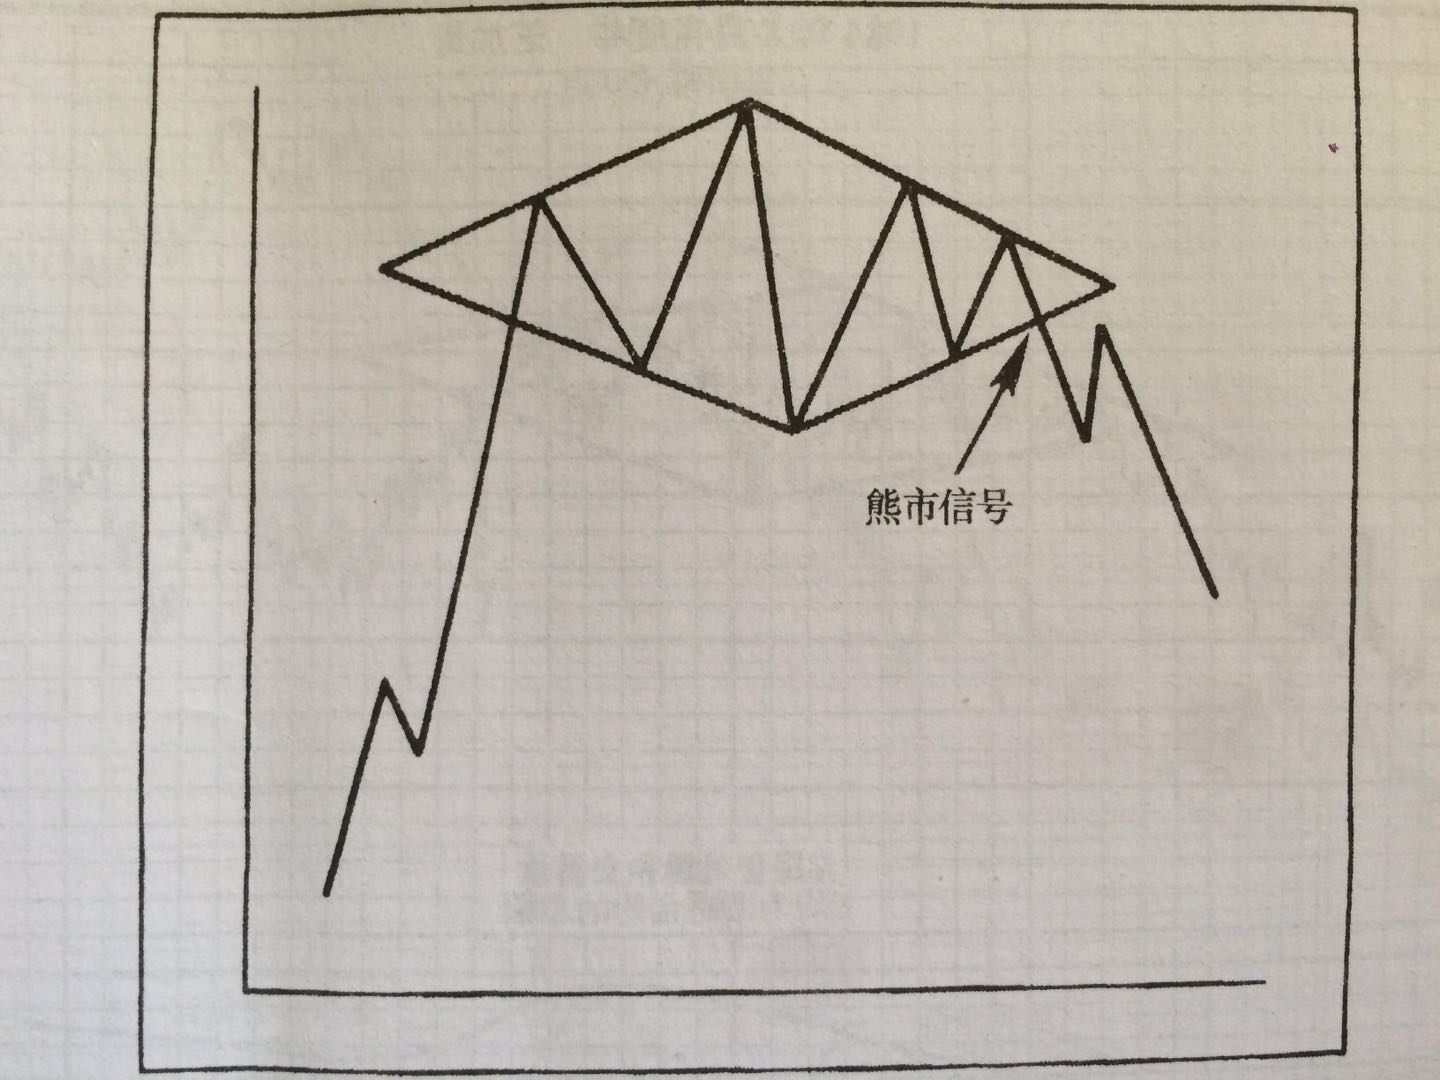 期货交易旗形和三角旗形，形态